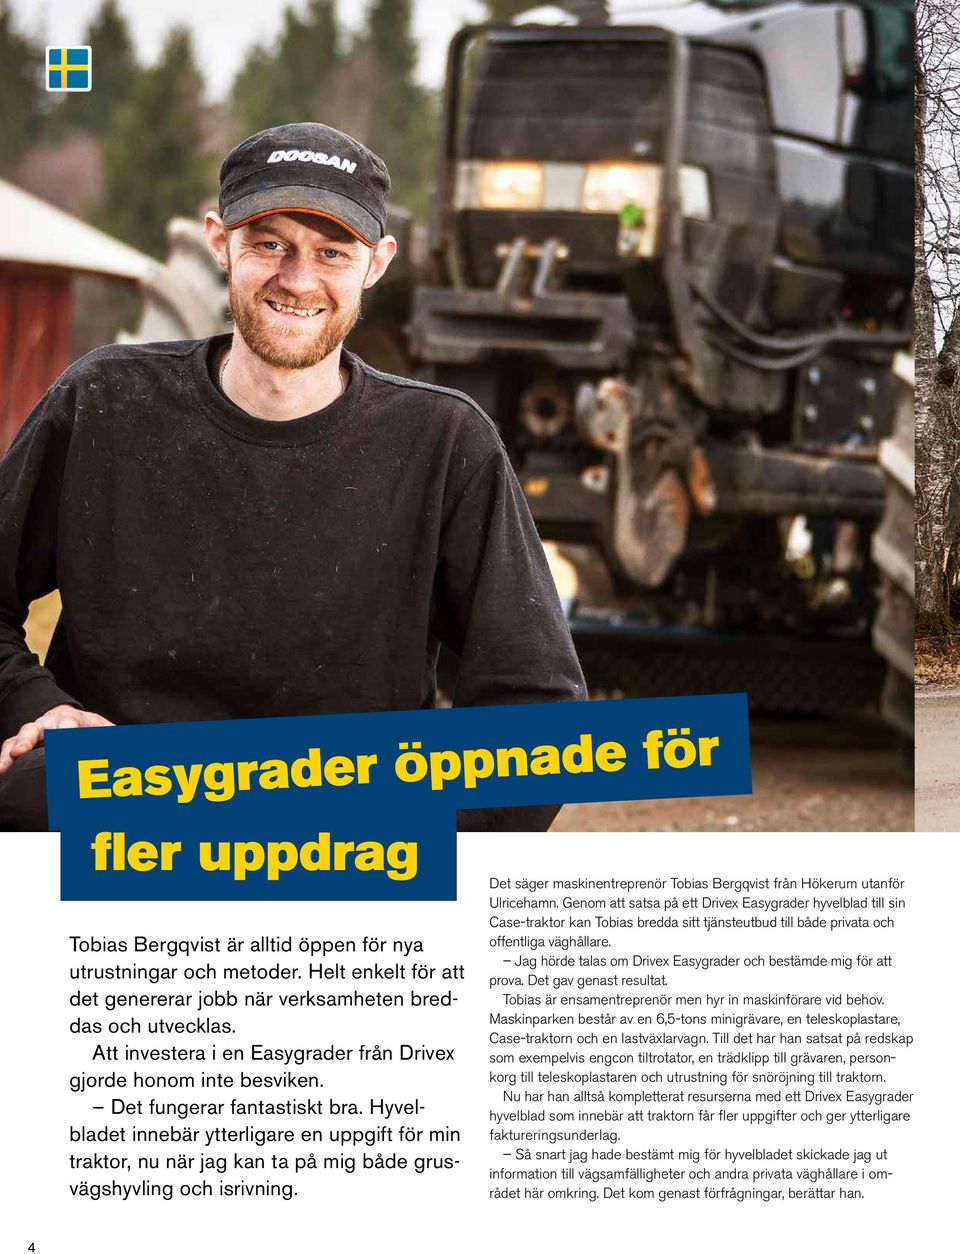 Hyvelbladet innebär ytterligare en uppgift för min traktor, nu när jag kan ta på mig både grusvägshyvling och isrivning. Det säger maskinentreprenör Tobias Bergqvist från Hökerum utanför Ulricehamn.